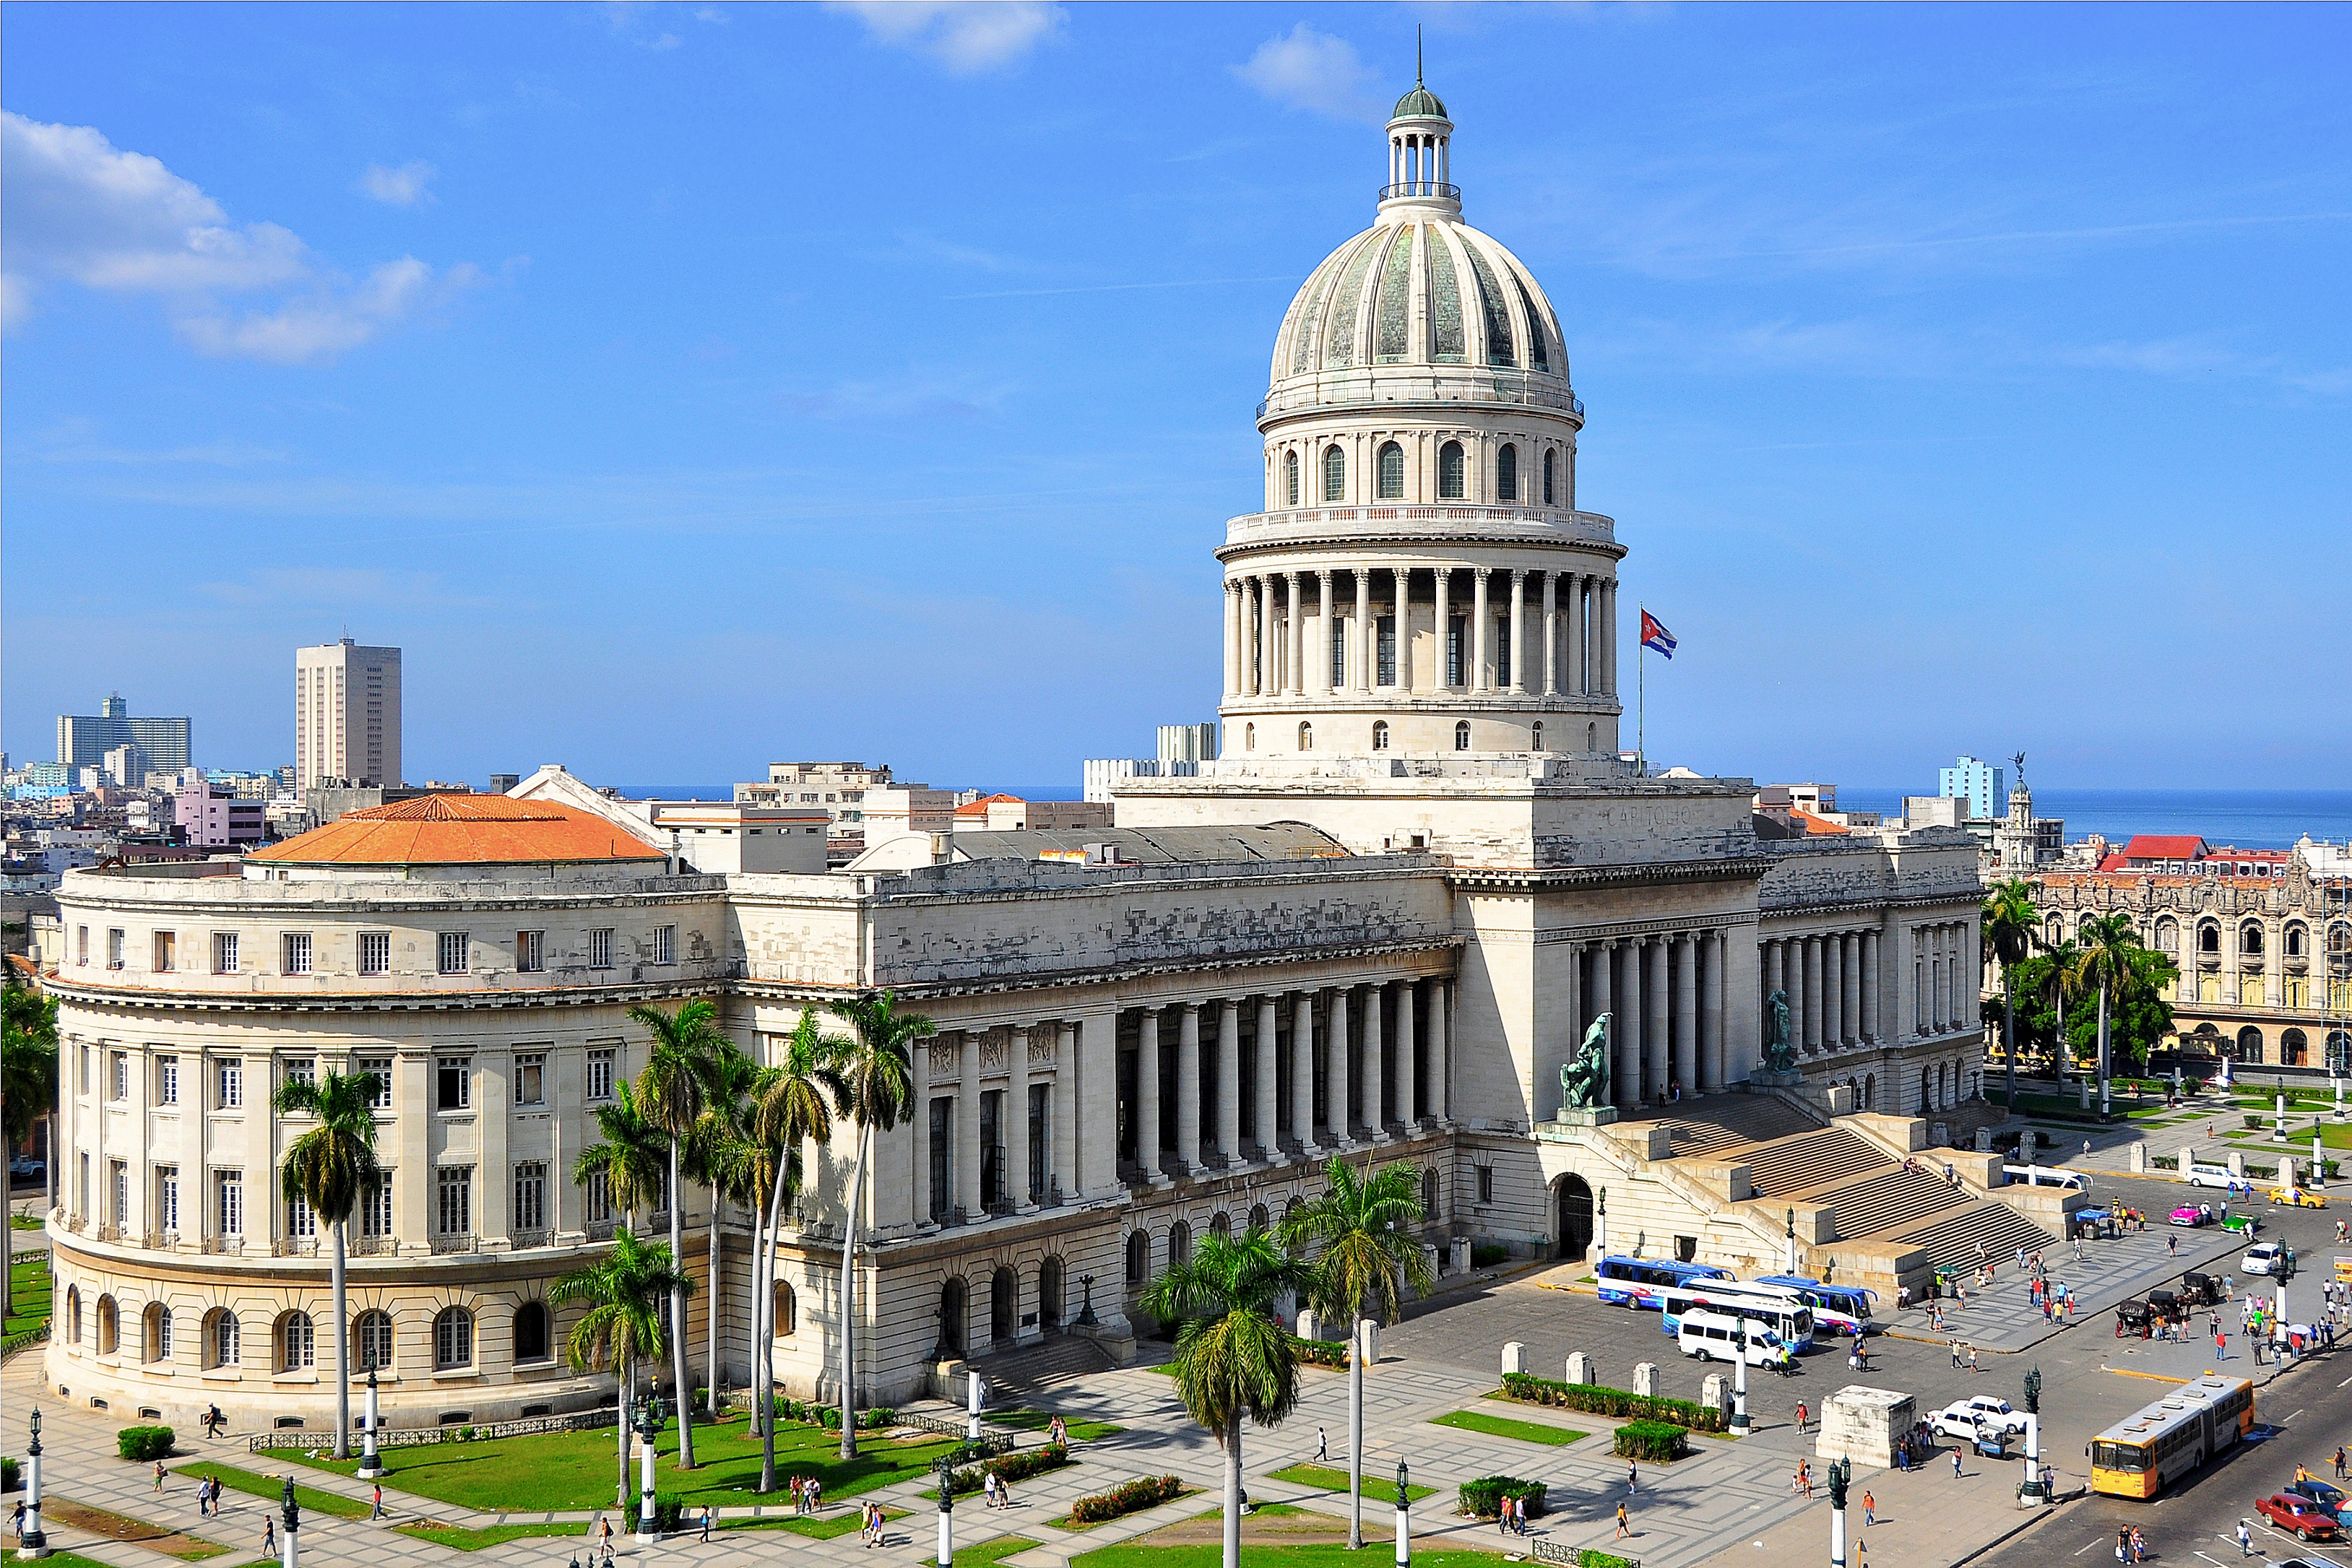 Pontos turísticos de Havana: o Capitólio Nacional